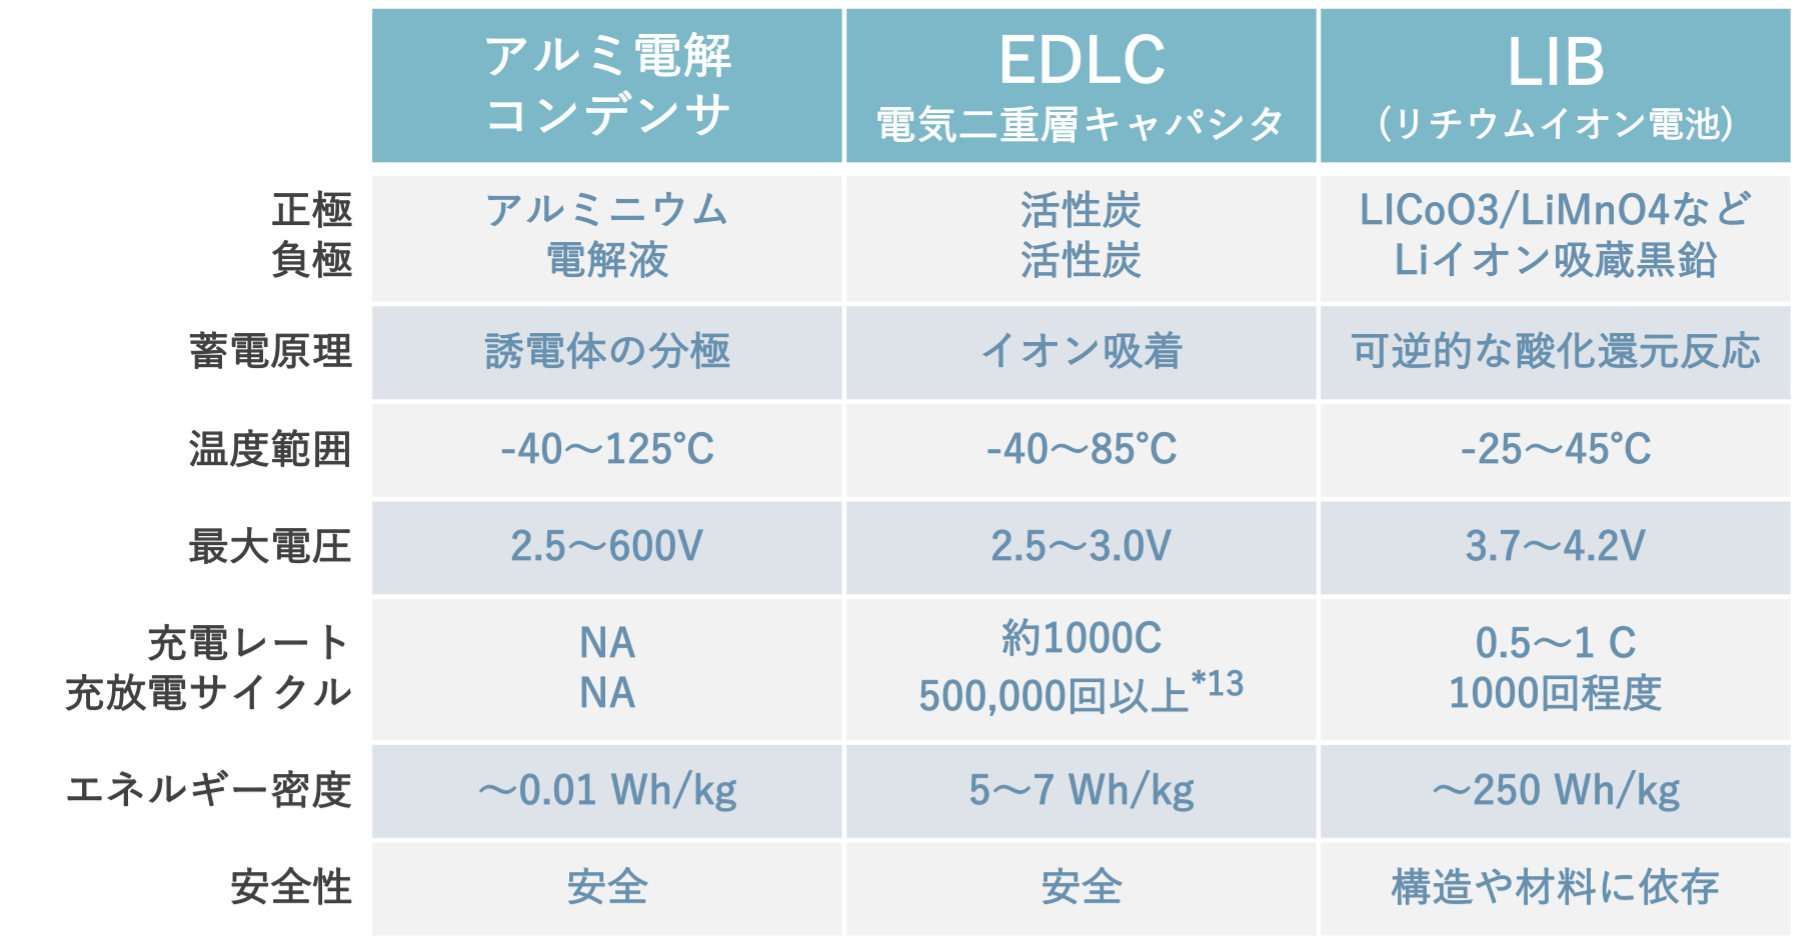 表1 アルミ電解コンデンサ、EDLC、LIB(リチウムイオン電池)の特性の比較